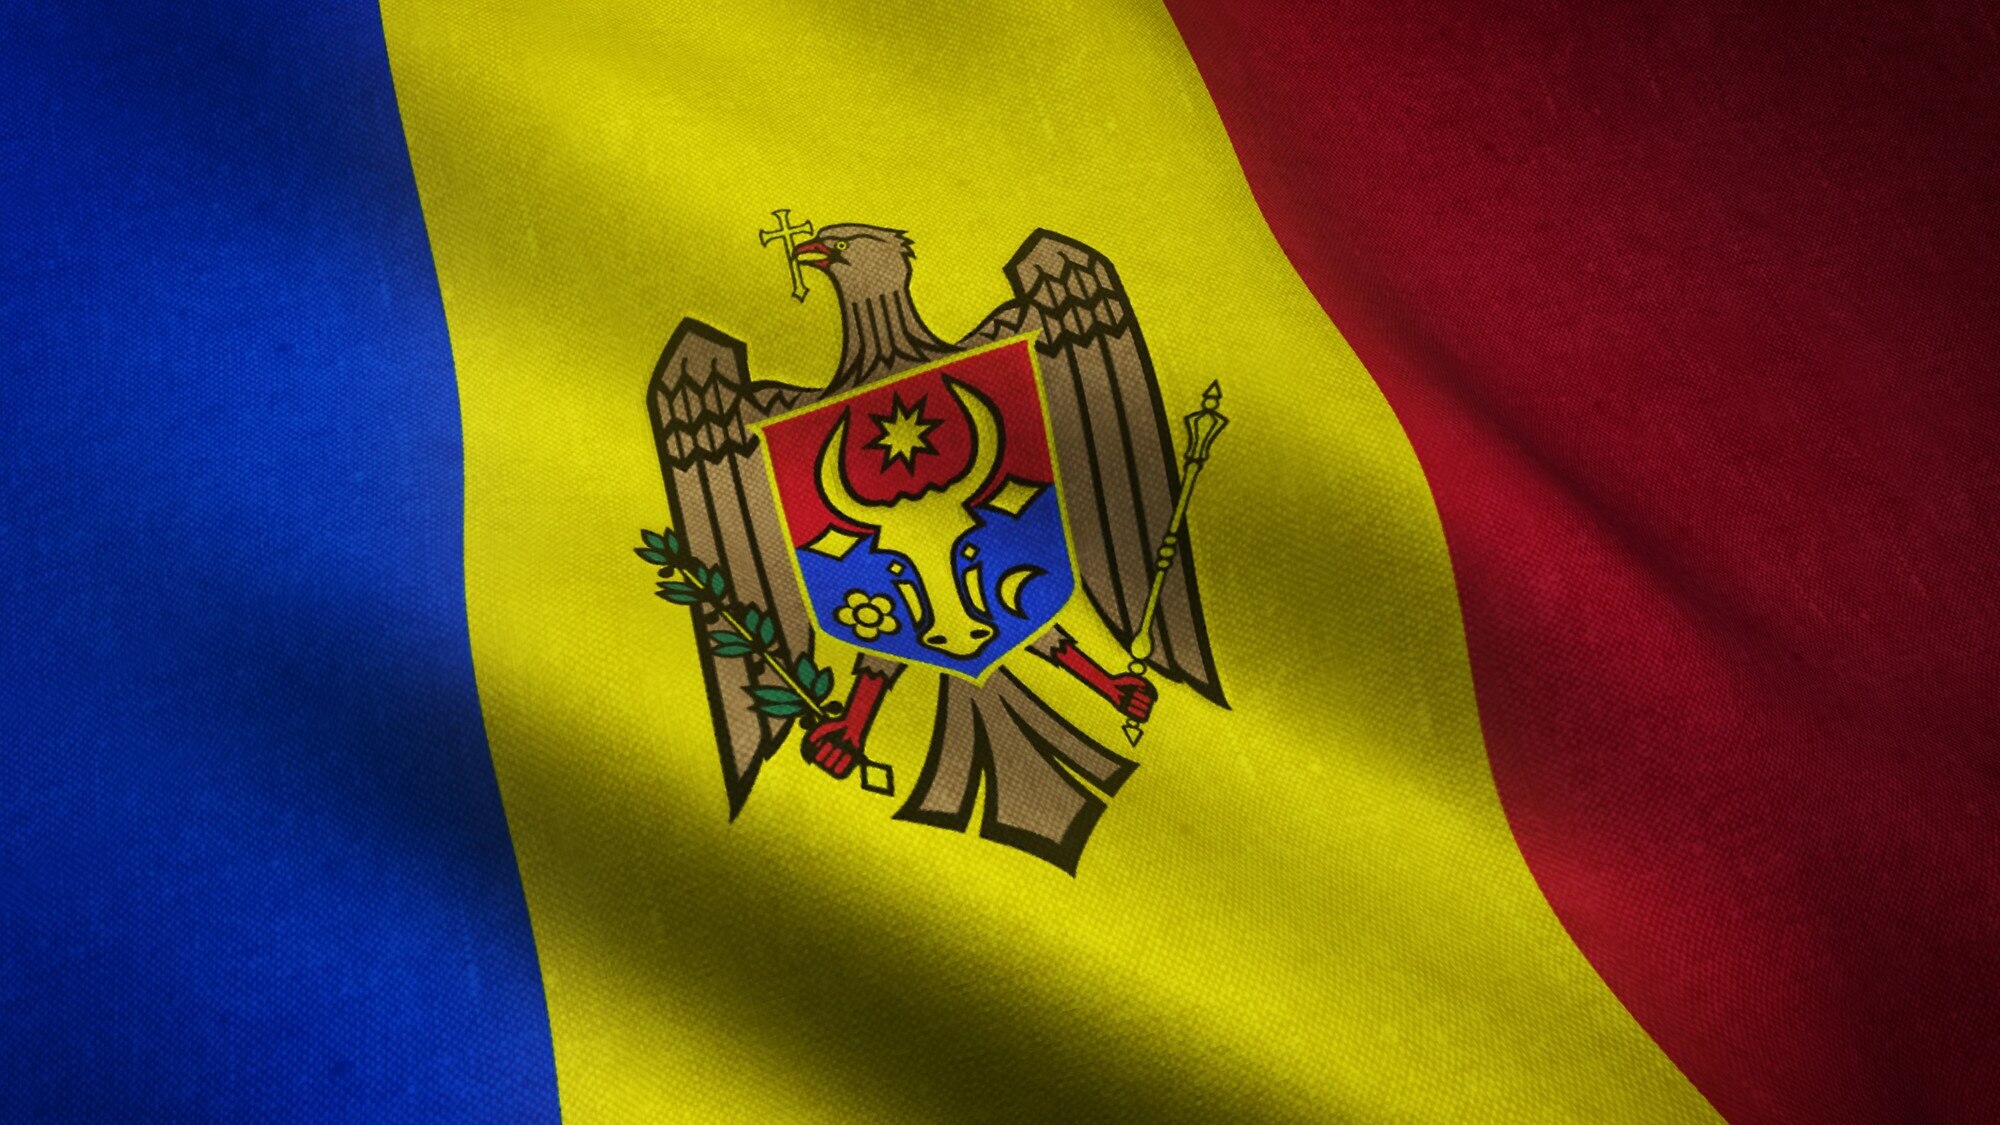 Участники Би-2 попросили гражданство Молдовы